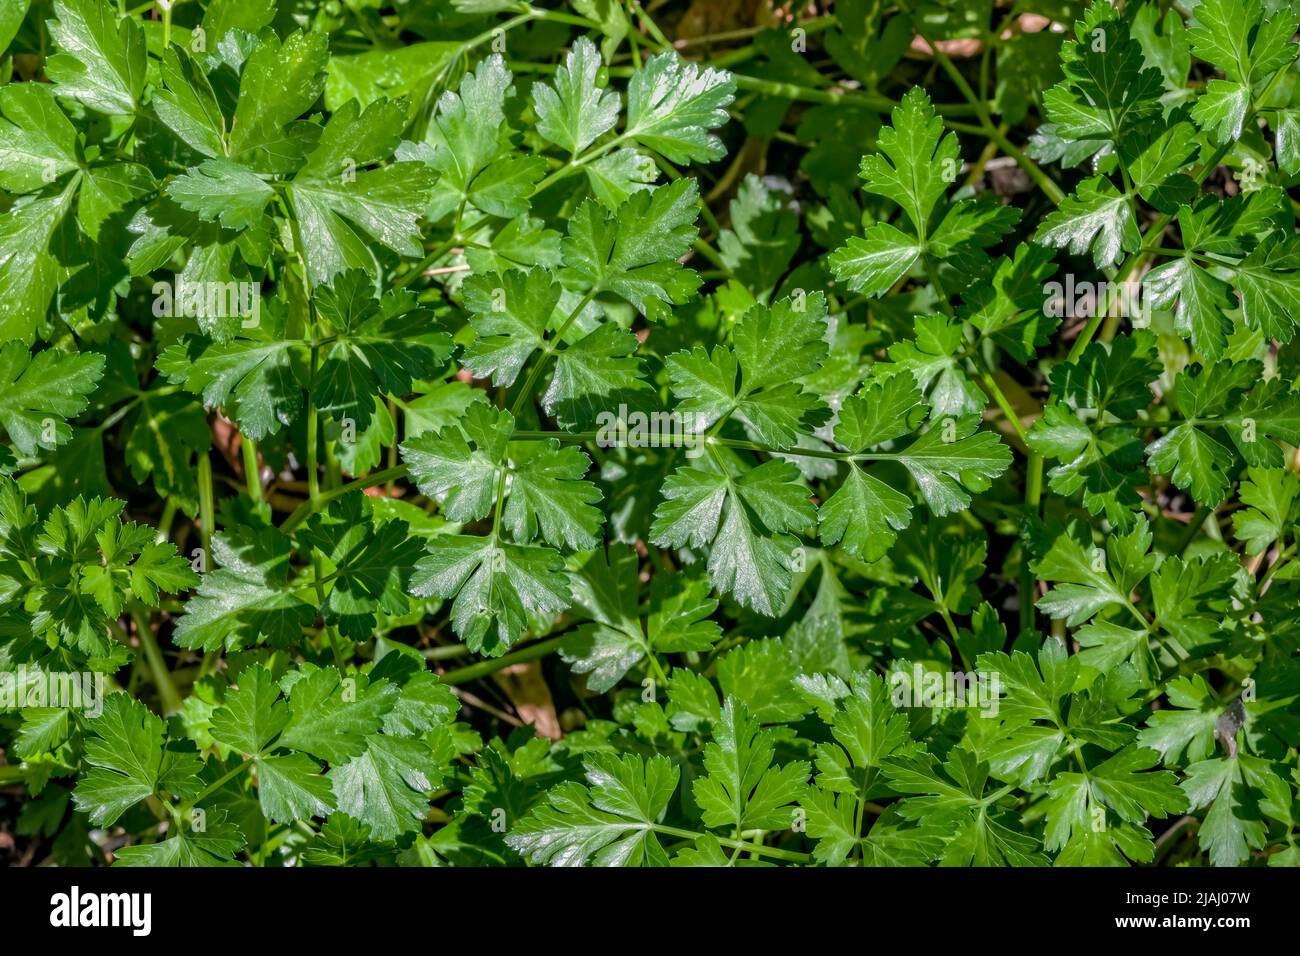 Prezzemolo o giardino prezzemolo (Petroselinum crispum) Foto Stock